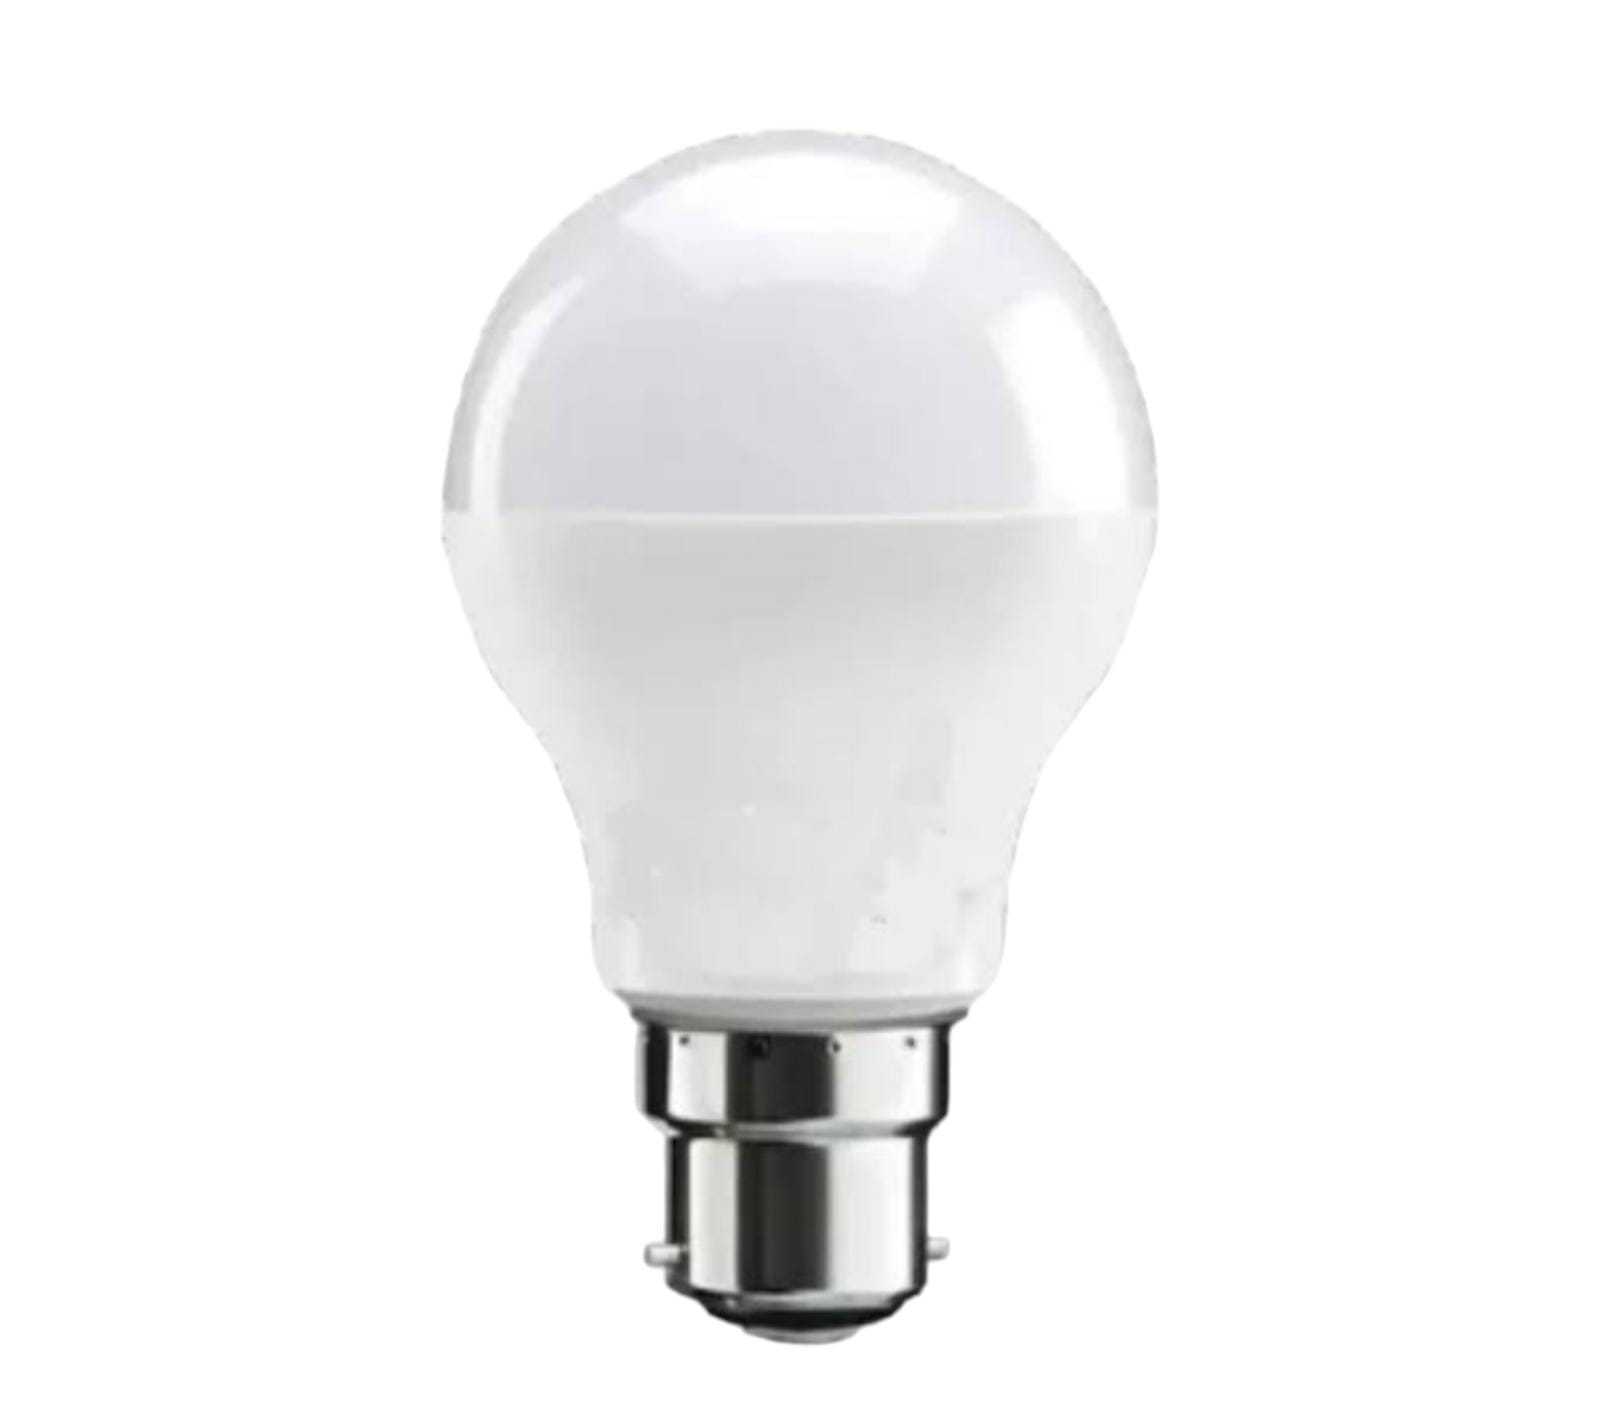  LED Bulb 